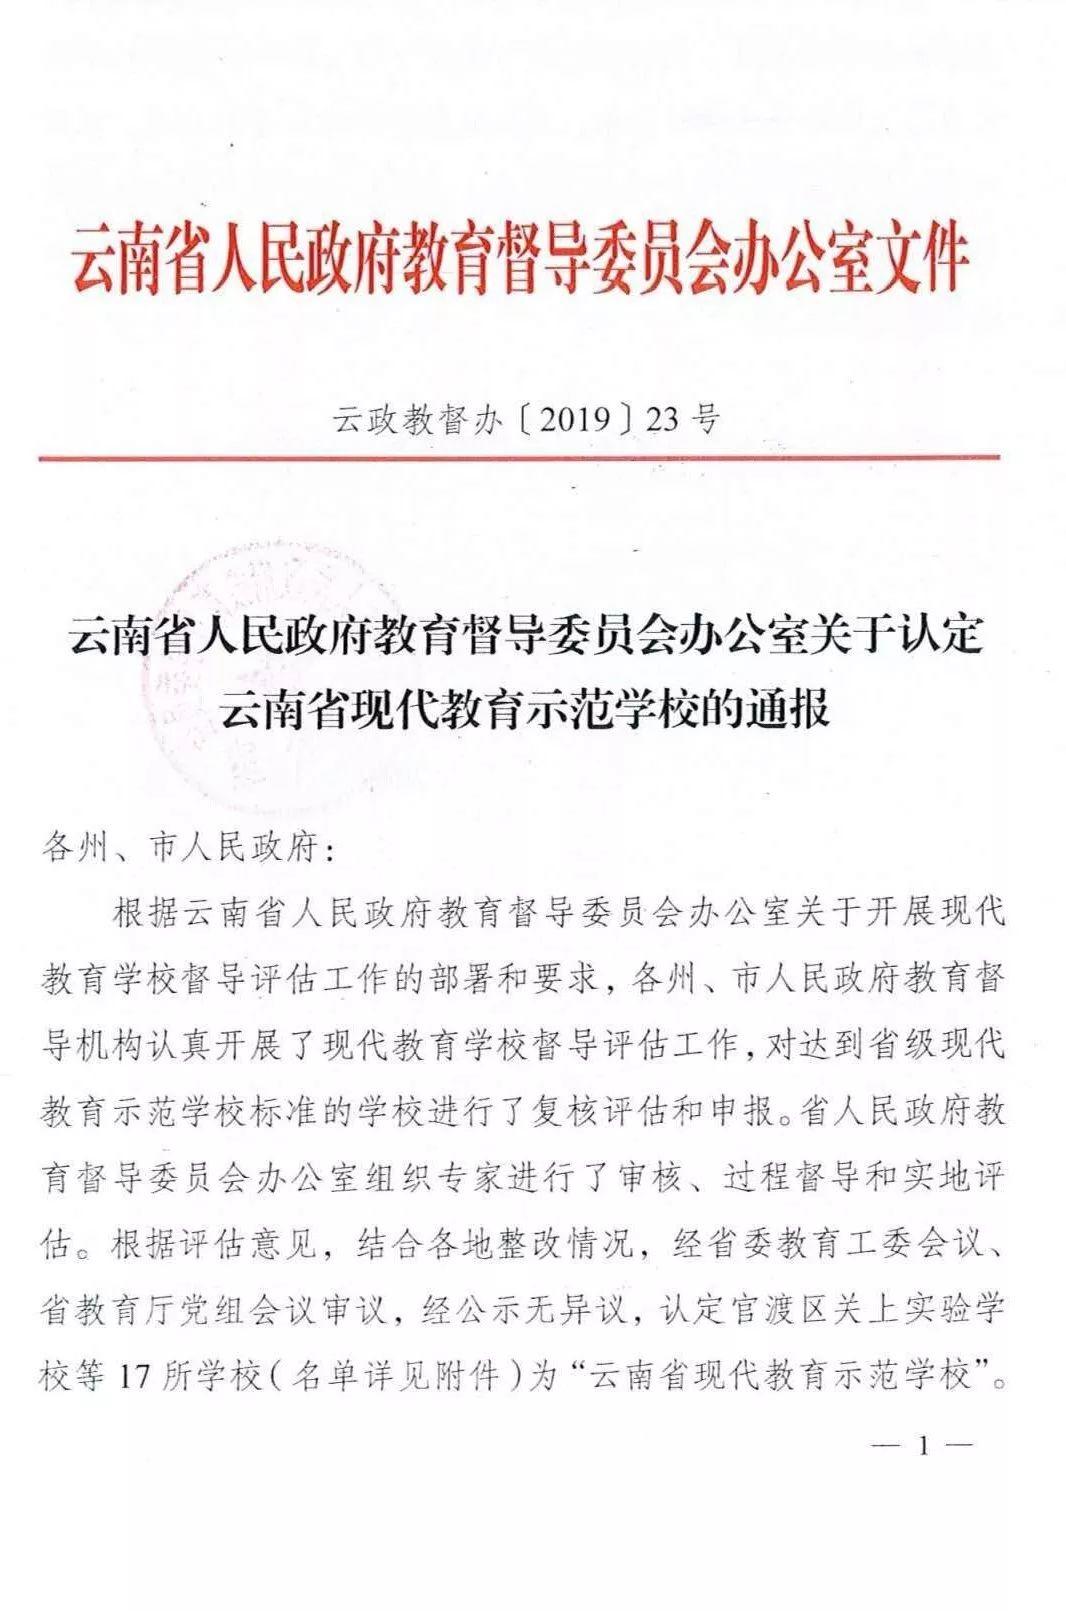 【特大喜讯】热烈祝贺！！！五华区外国语实验小学 —— 被评为“云南省现代教育示范学校”